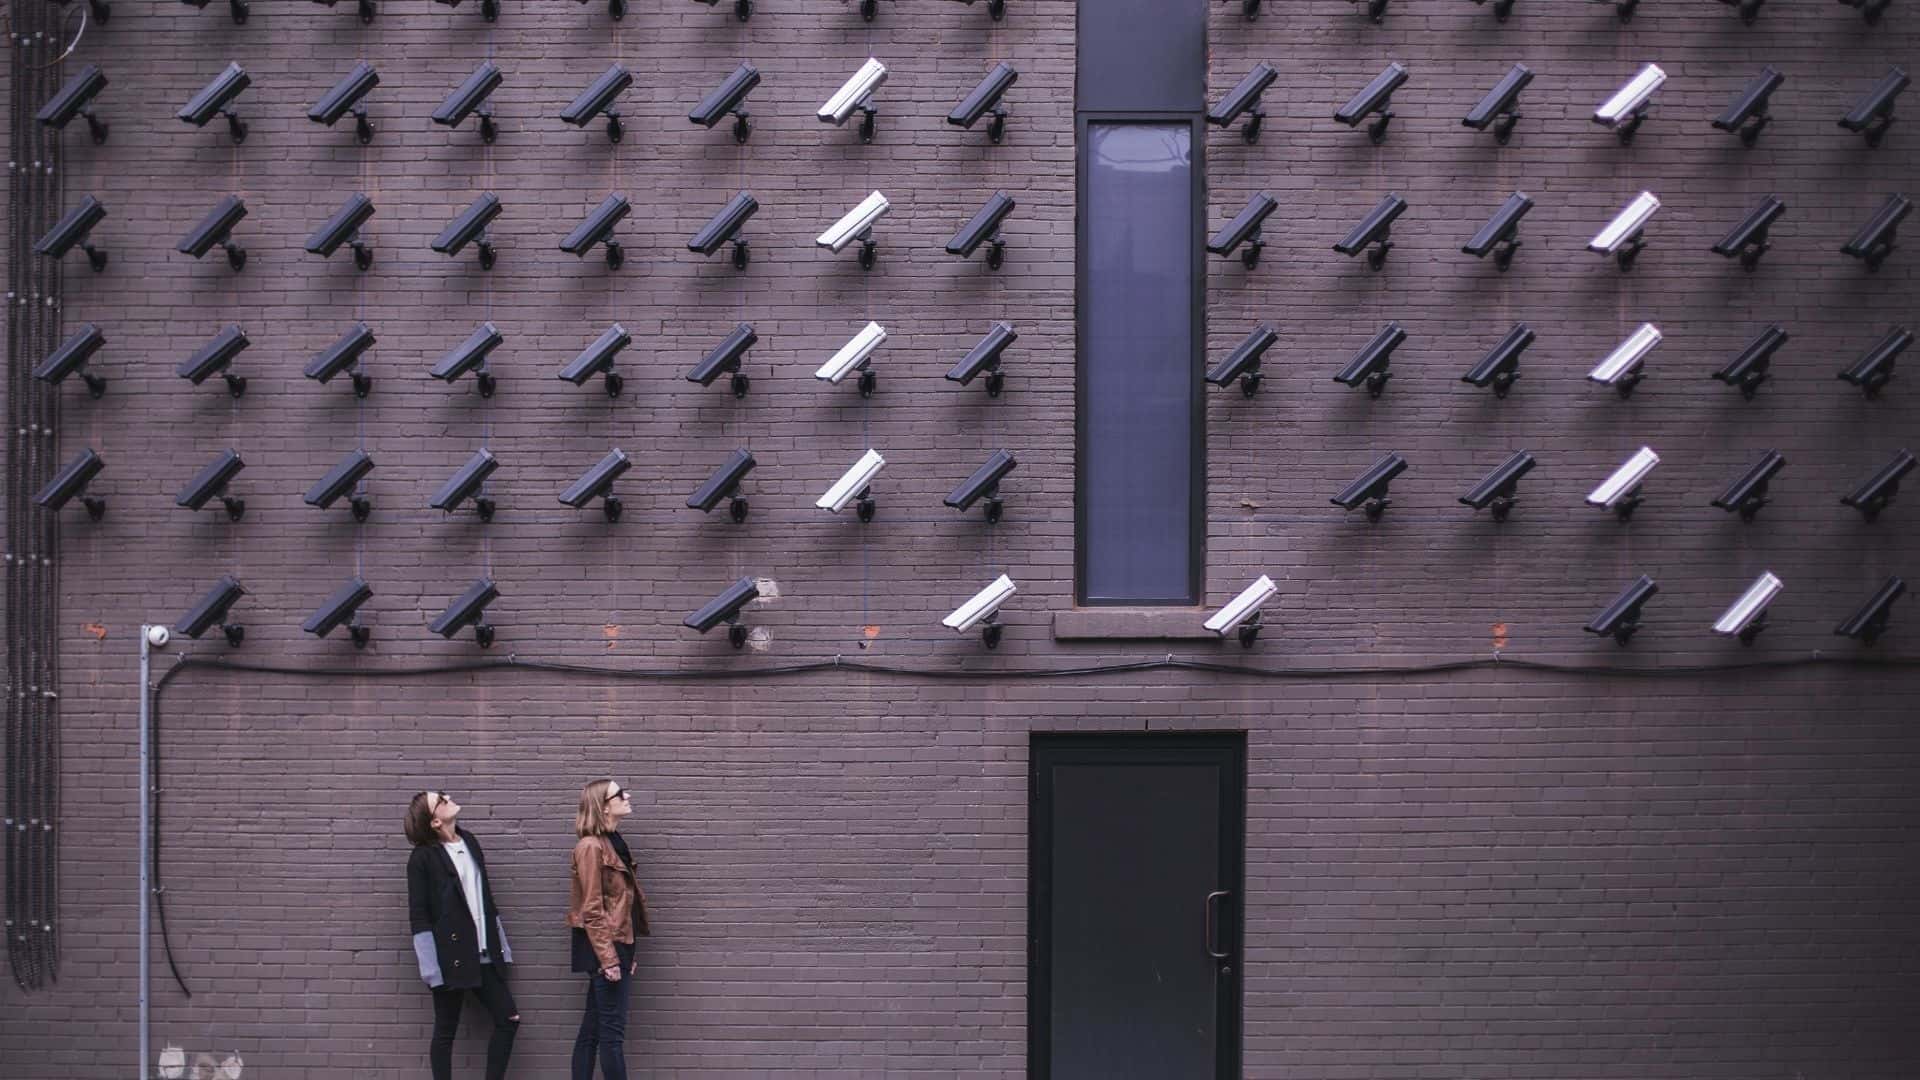 Implementar Tecnología de IA en Sistemas de CCTV